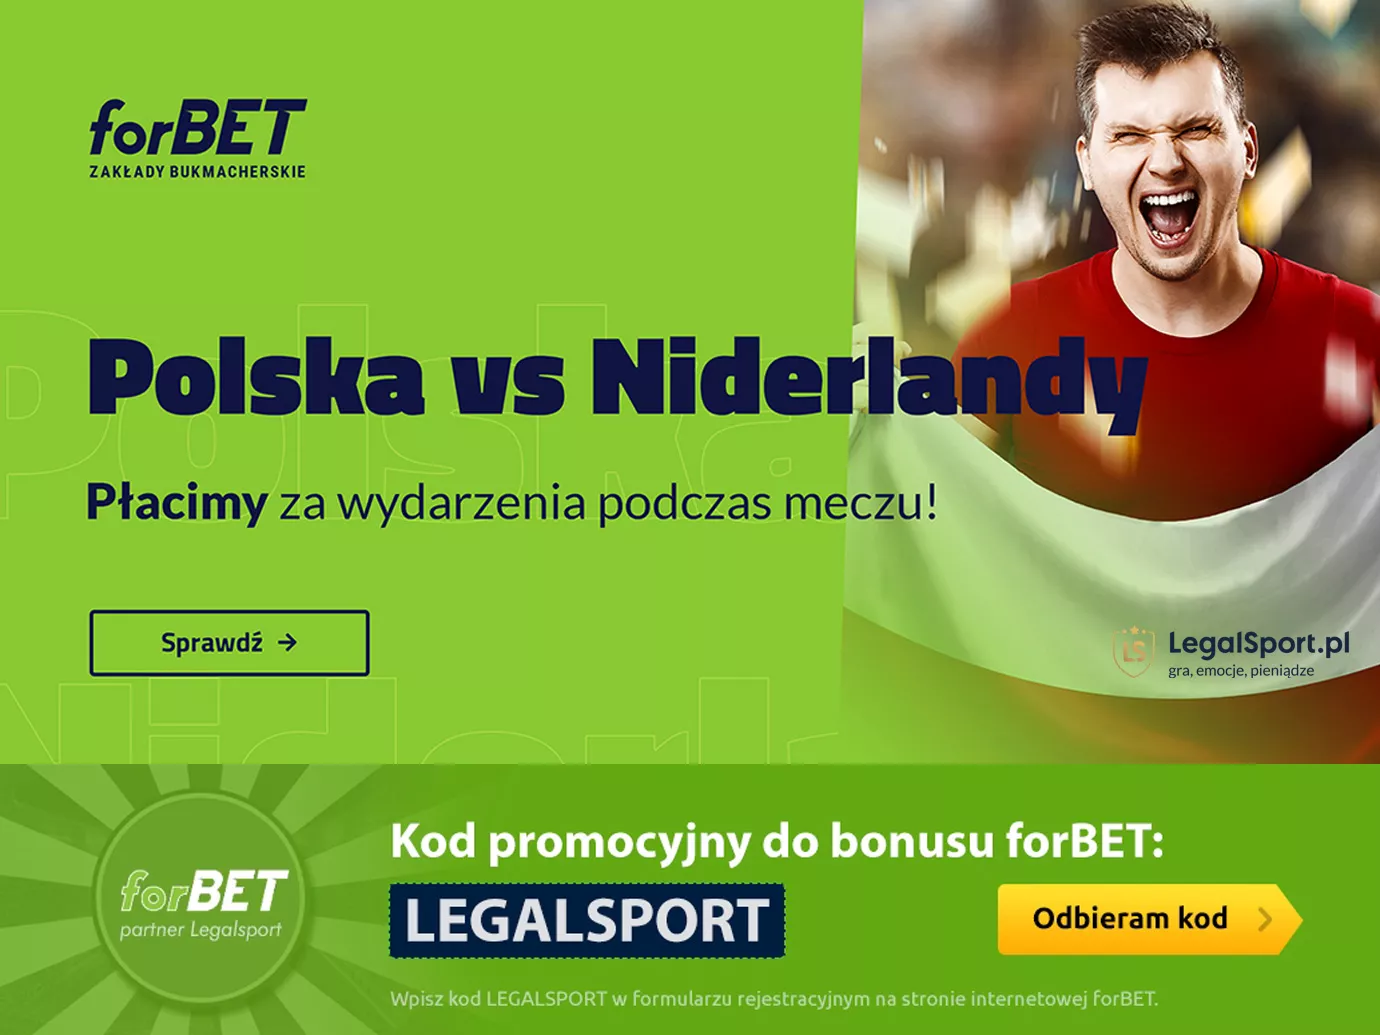 Bonusy na mecz Polska vs Niderlandy od forBET Zakłady Bukmacherskie